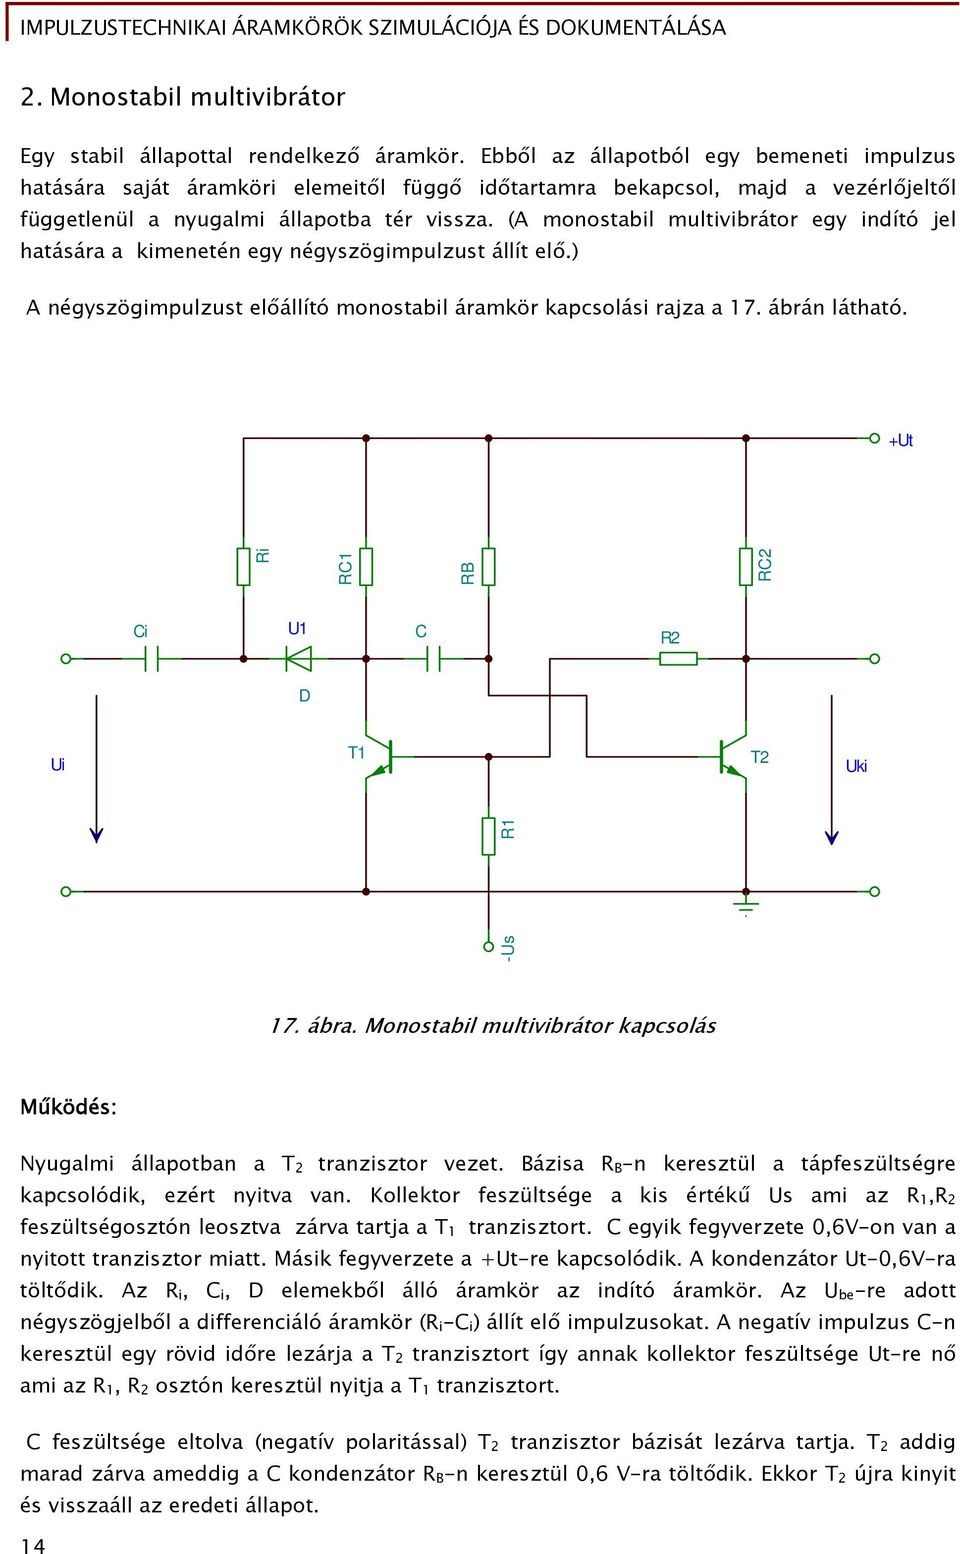 Impulzustechnikai áramkörök szimulációja és dokumentálása - PDF Ingyenes  letöltés